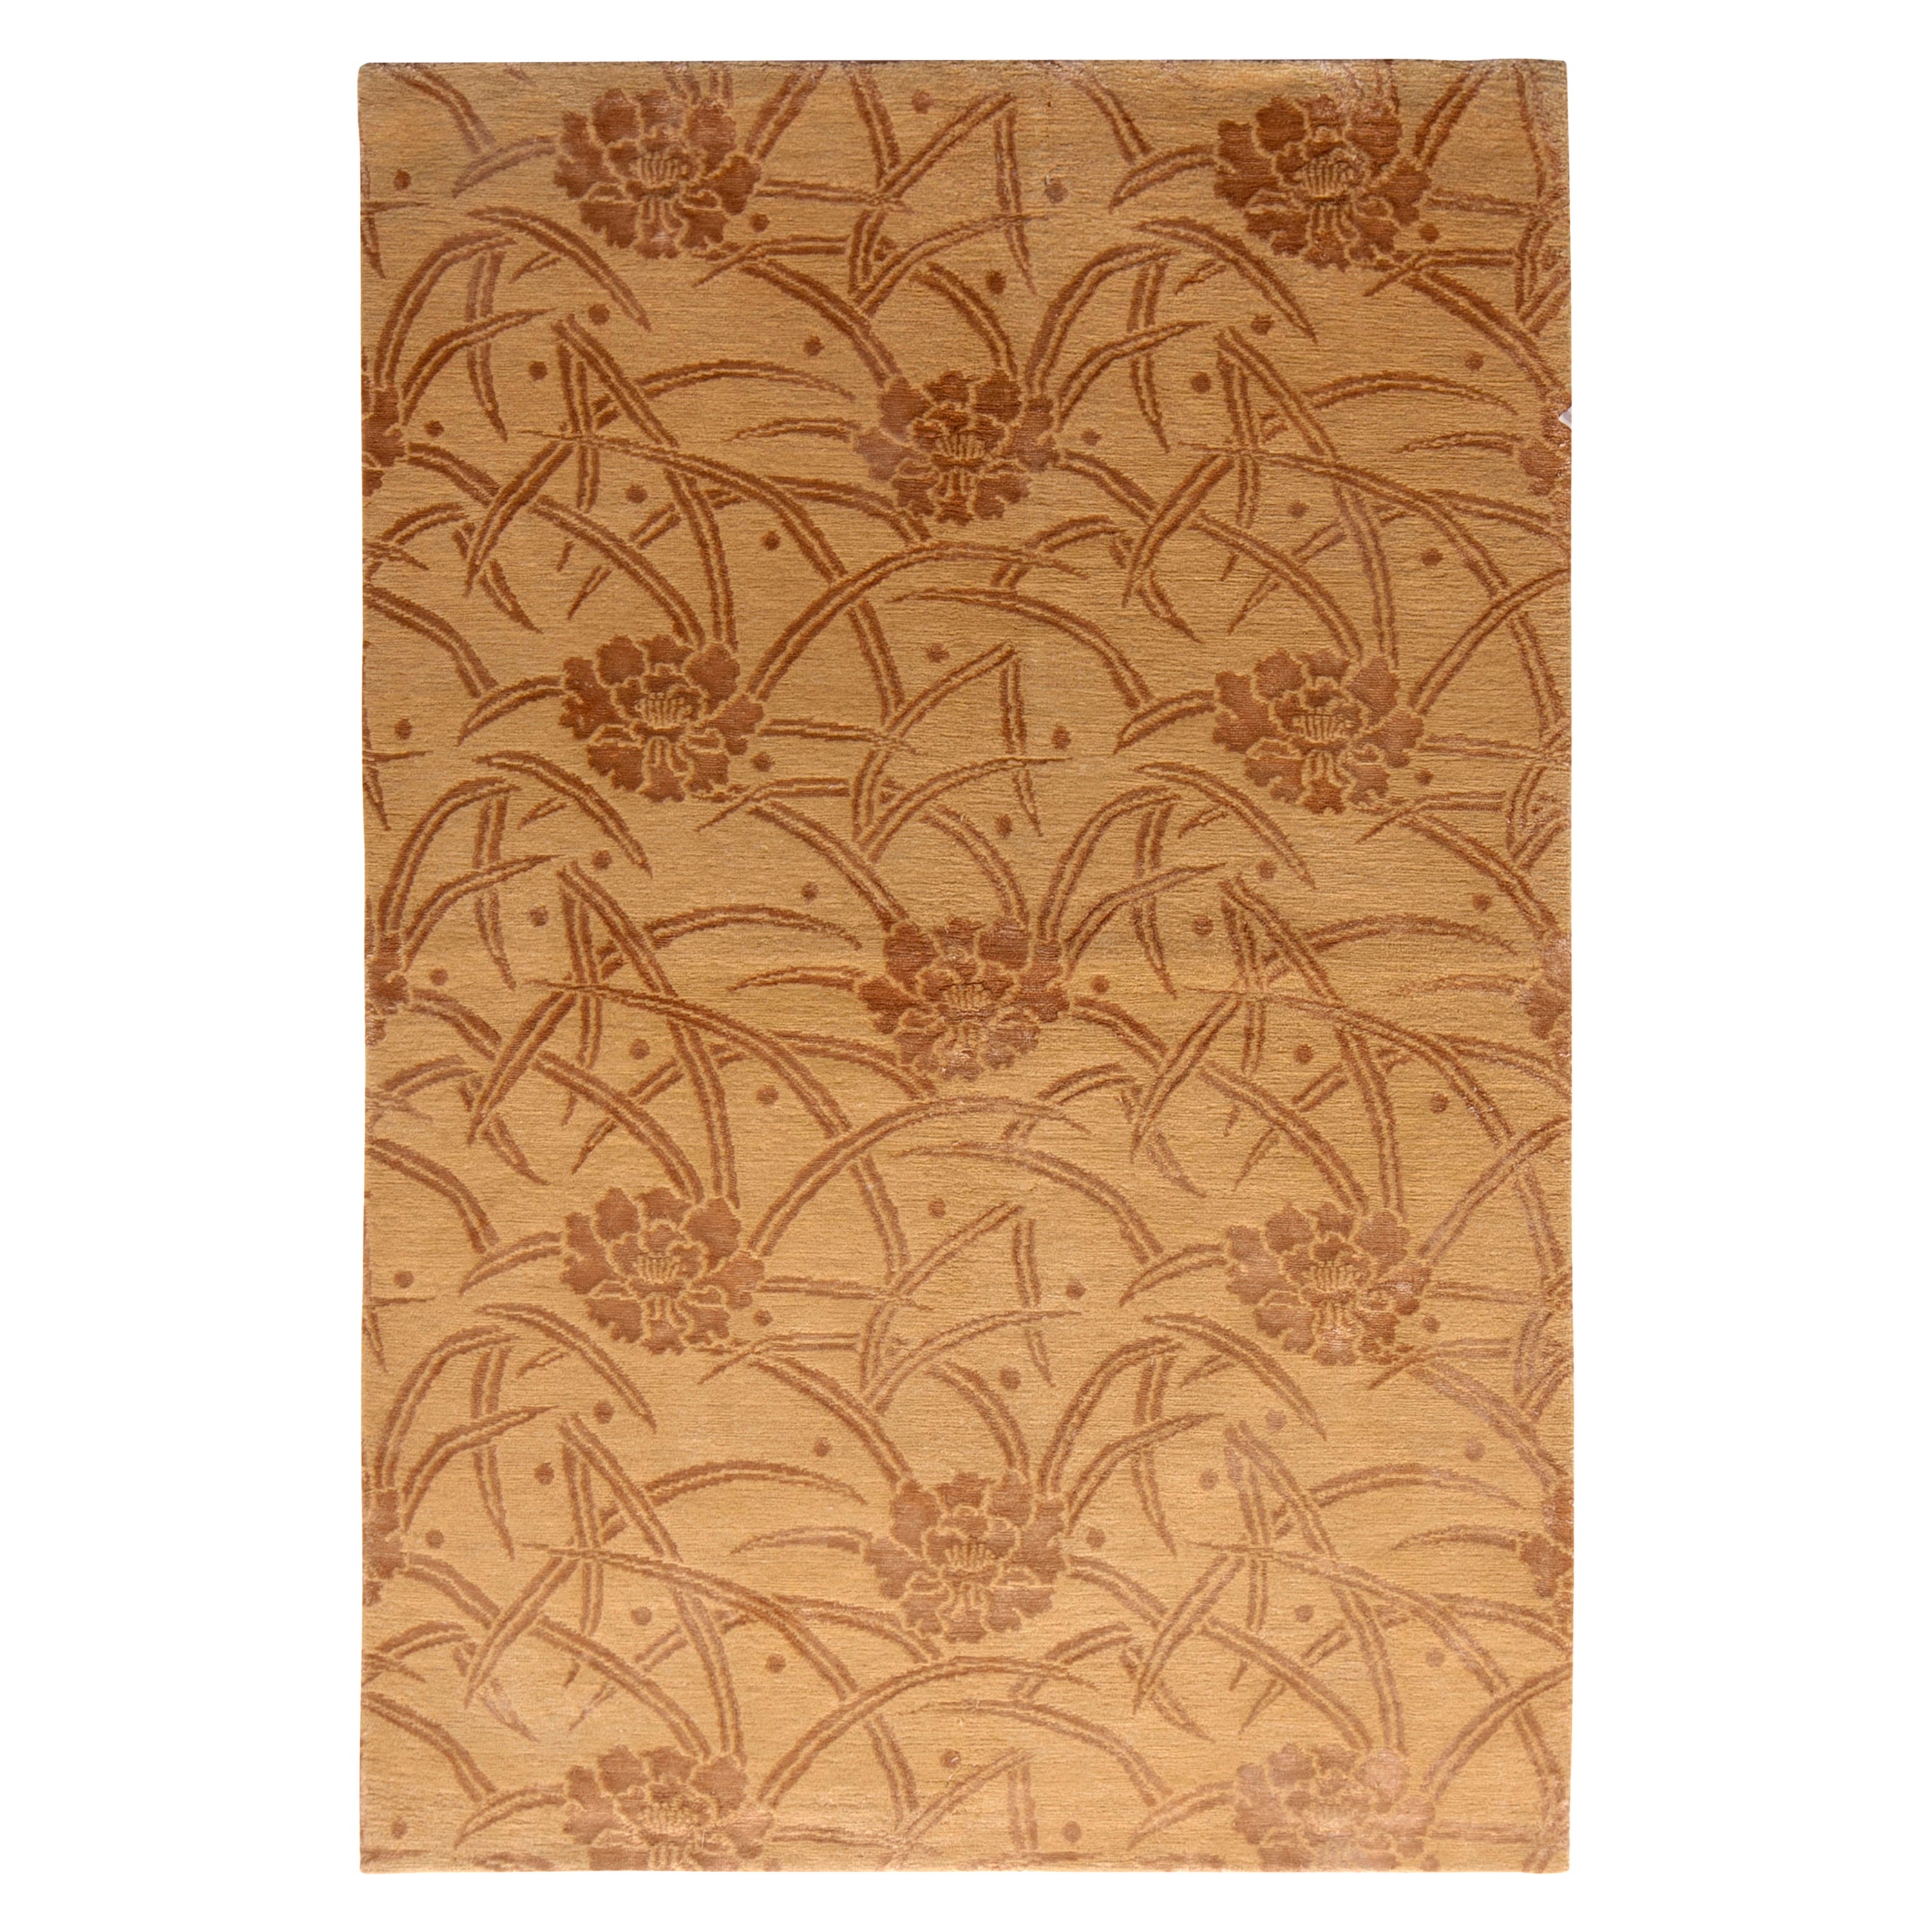 Teppich & Kelim-Teppich im europäischen Stil mit beigem und braunem Blumenmuster